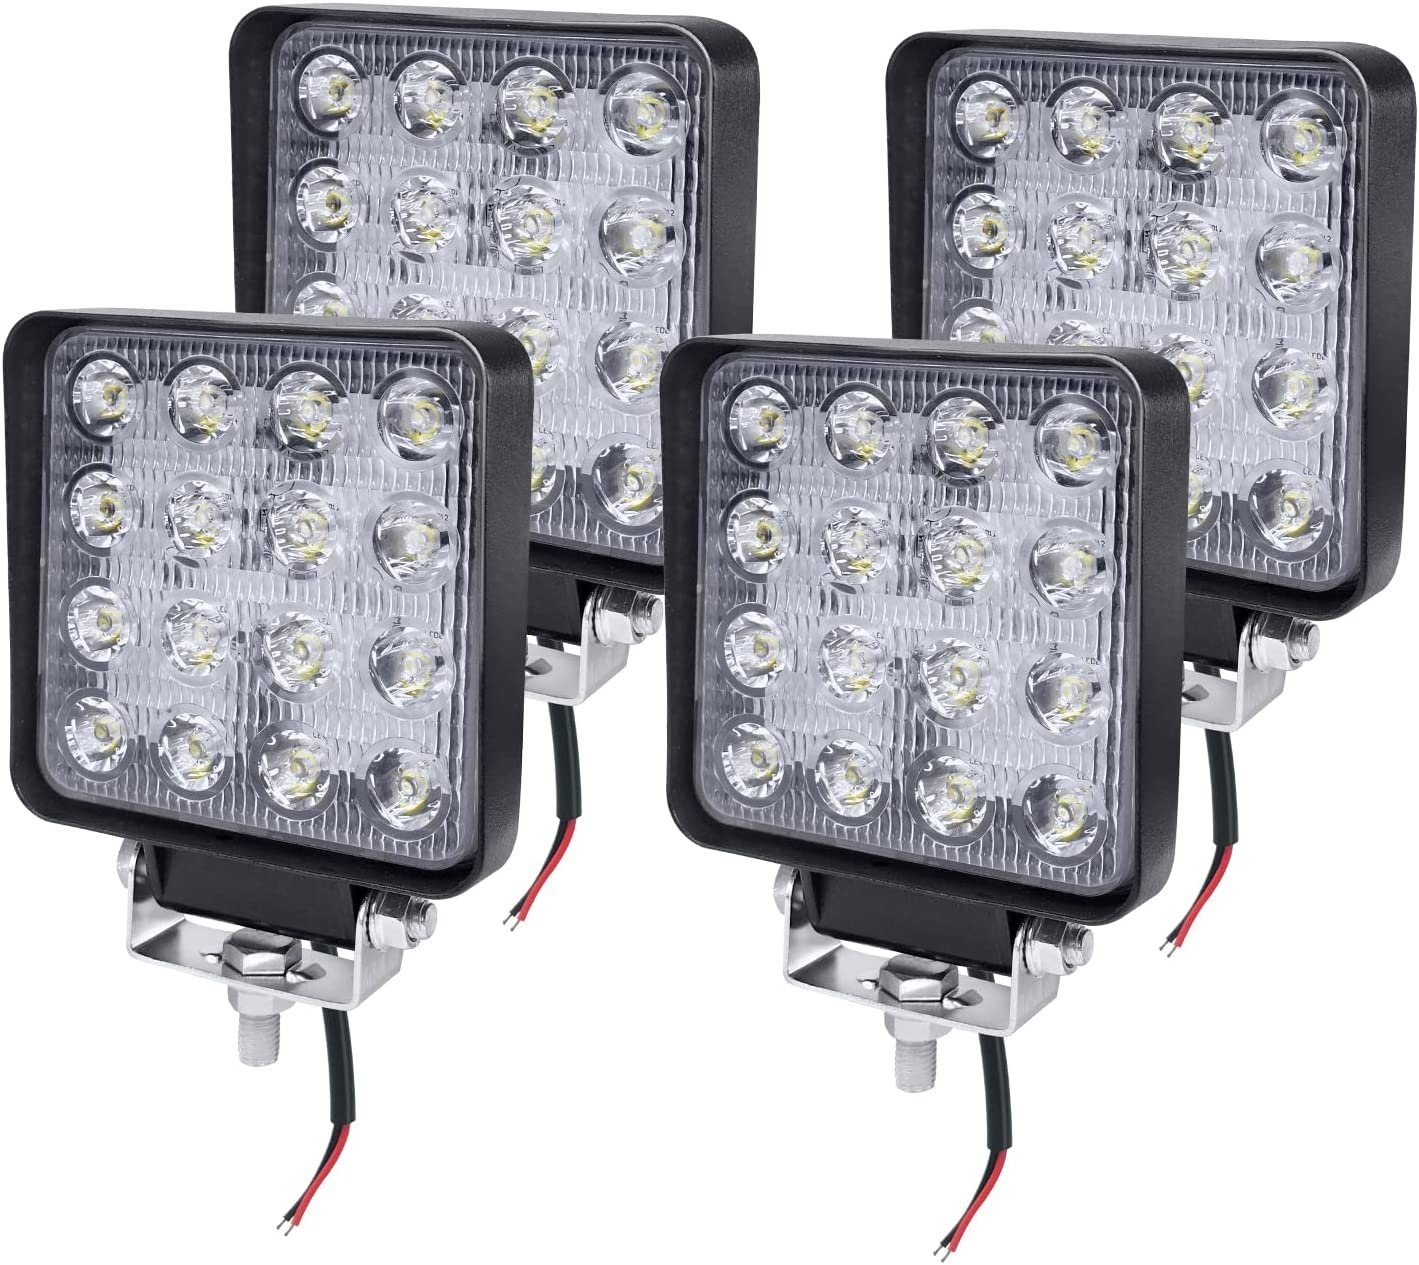 UISEBRT LED Scheinwerfer LED Arbeitsscheinwerfer 12V Flutlicht 4 x 48W | Autolampen